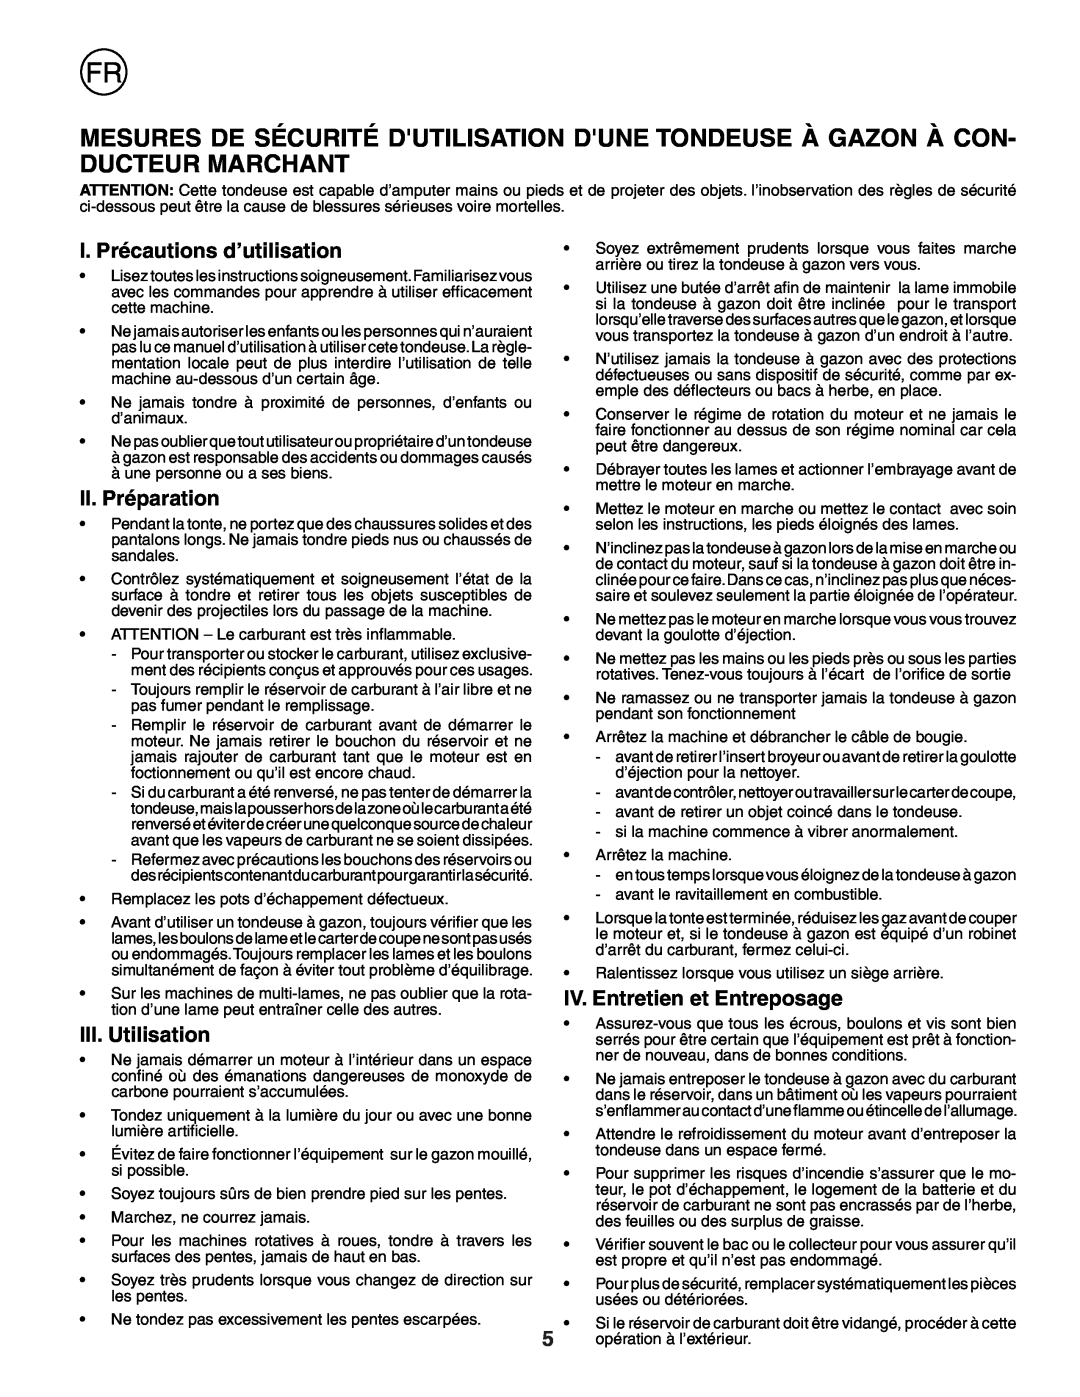 Husqvarna R53W I. Précautions d’utilisation, II. Préparation, III. Utilisation, IV. Entretien et Entreposage 